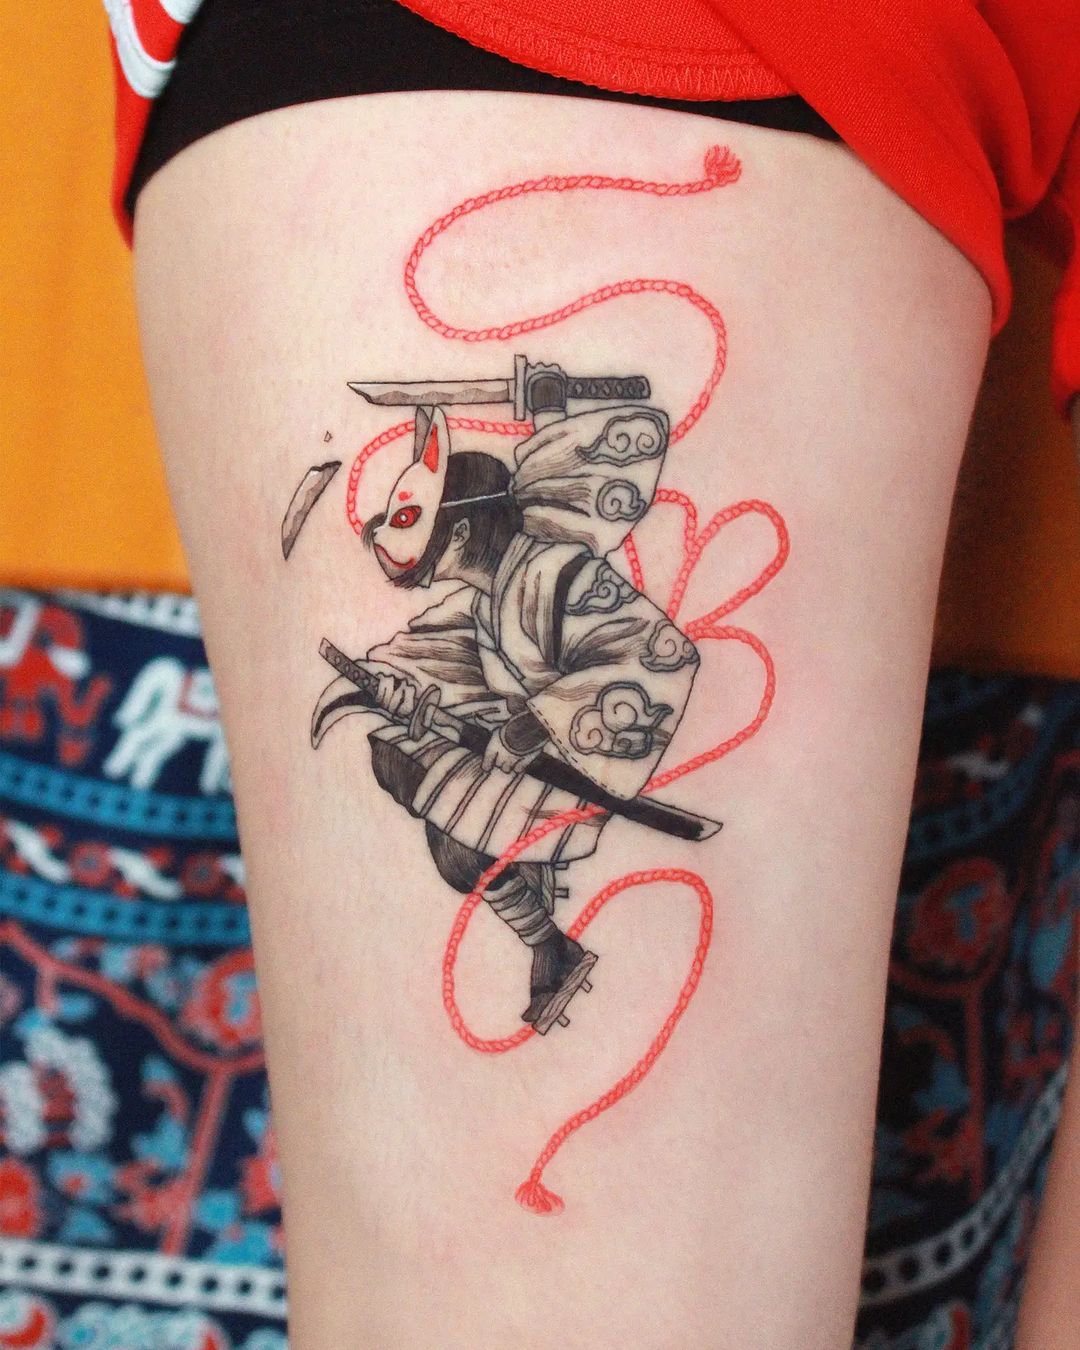 Tatuaje Kitsune inspirado en Japón.